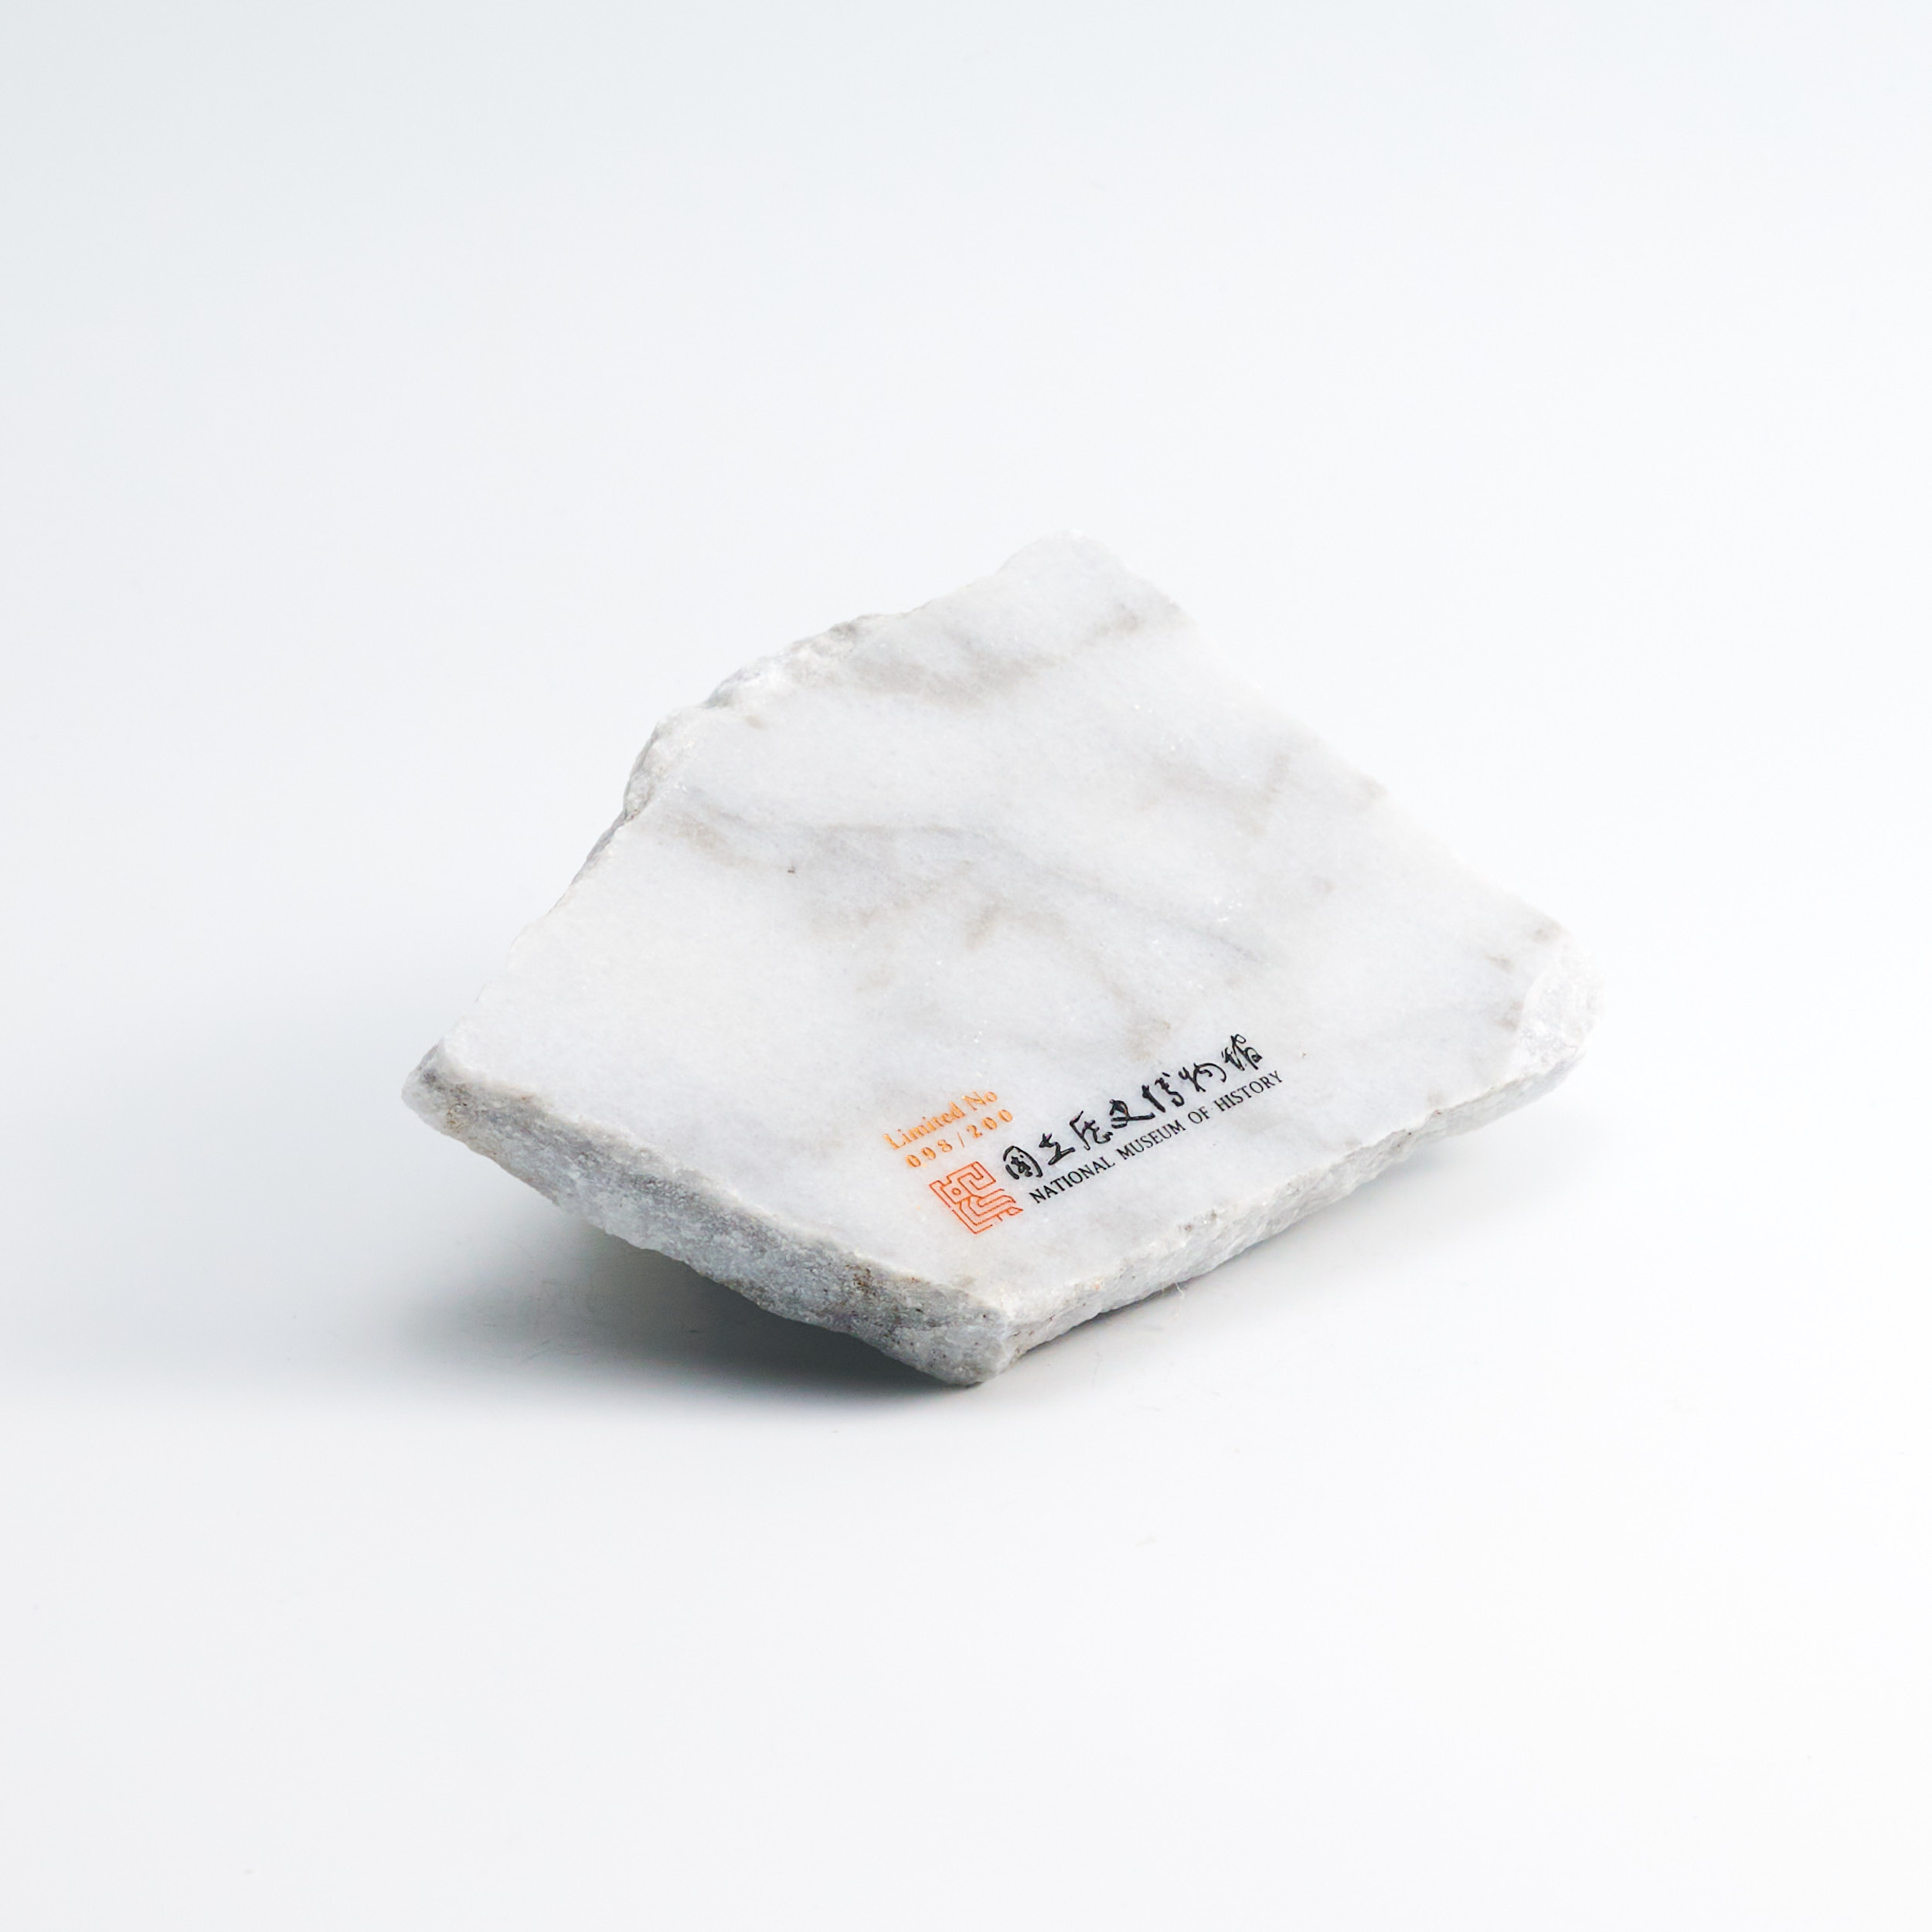 質感大理石小盤NO.098(限量收藏版) marble plate NO.098